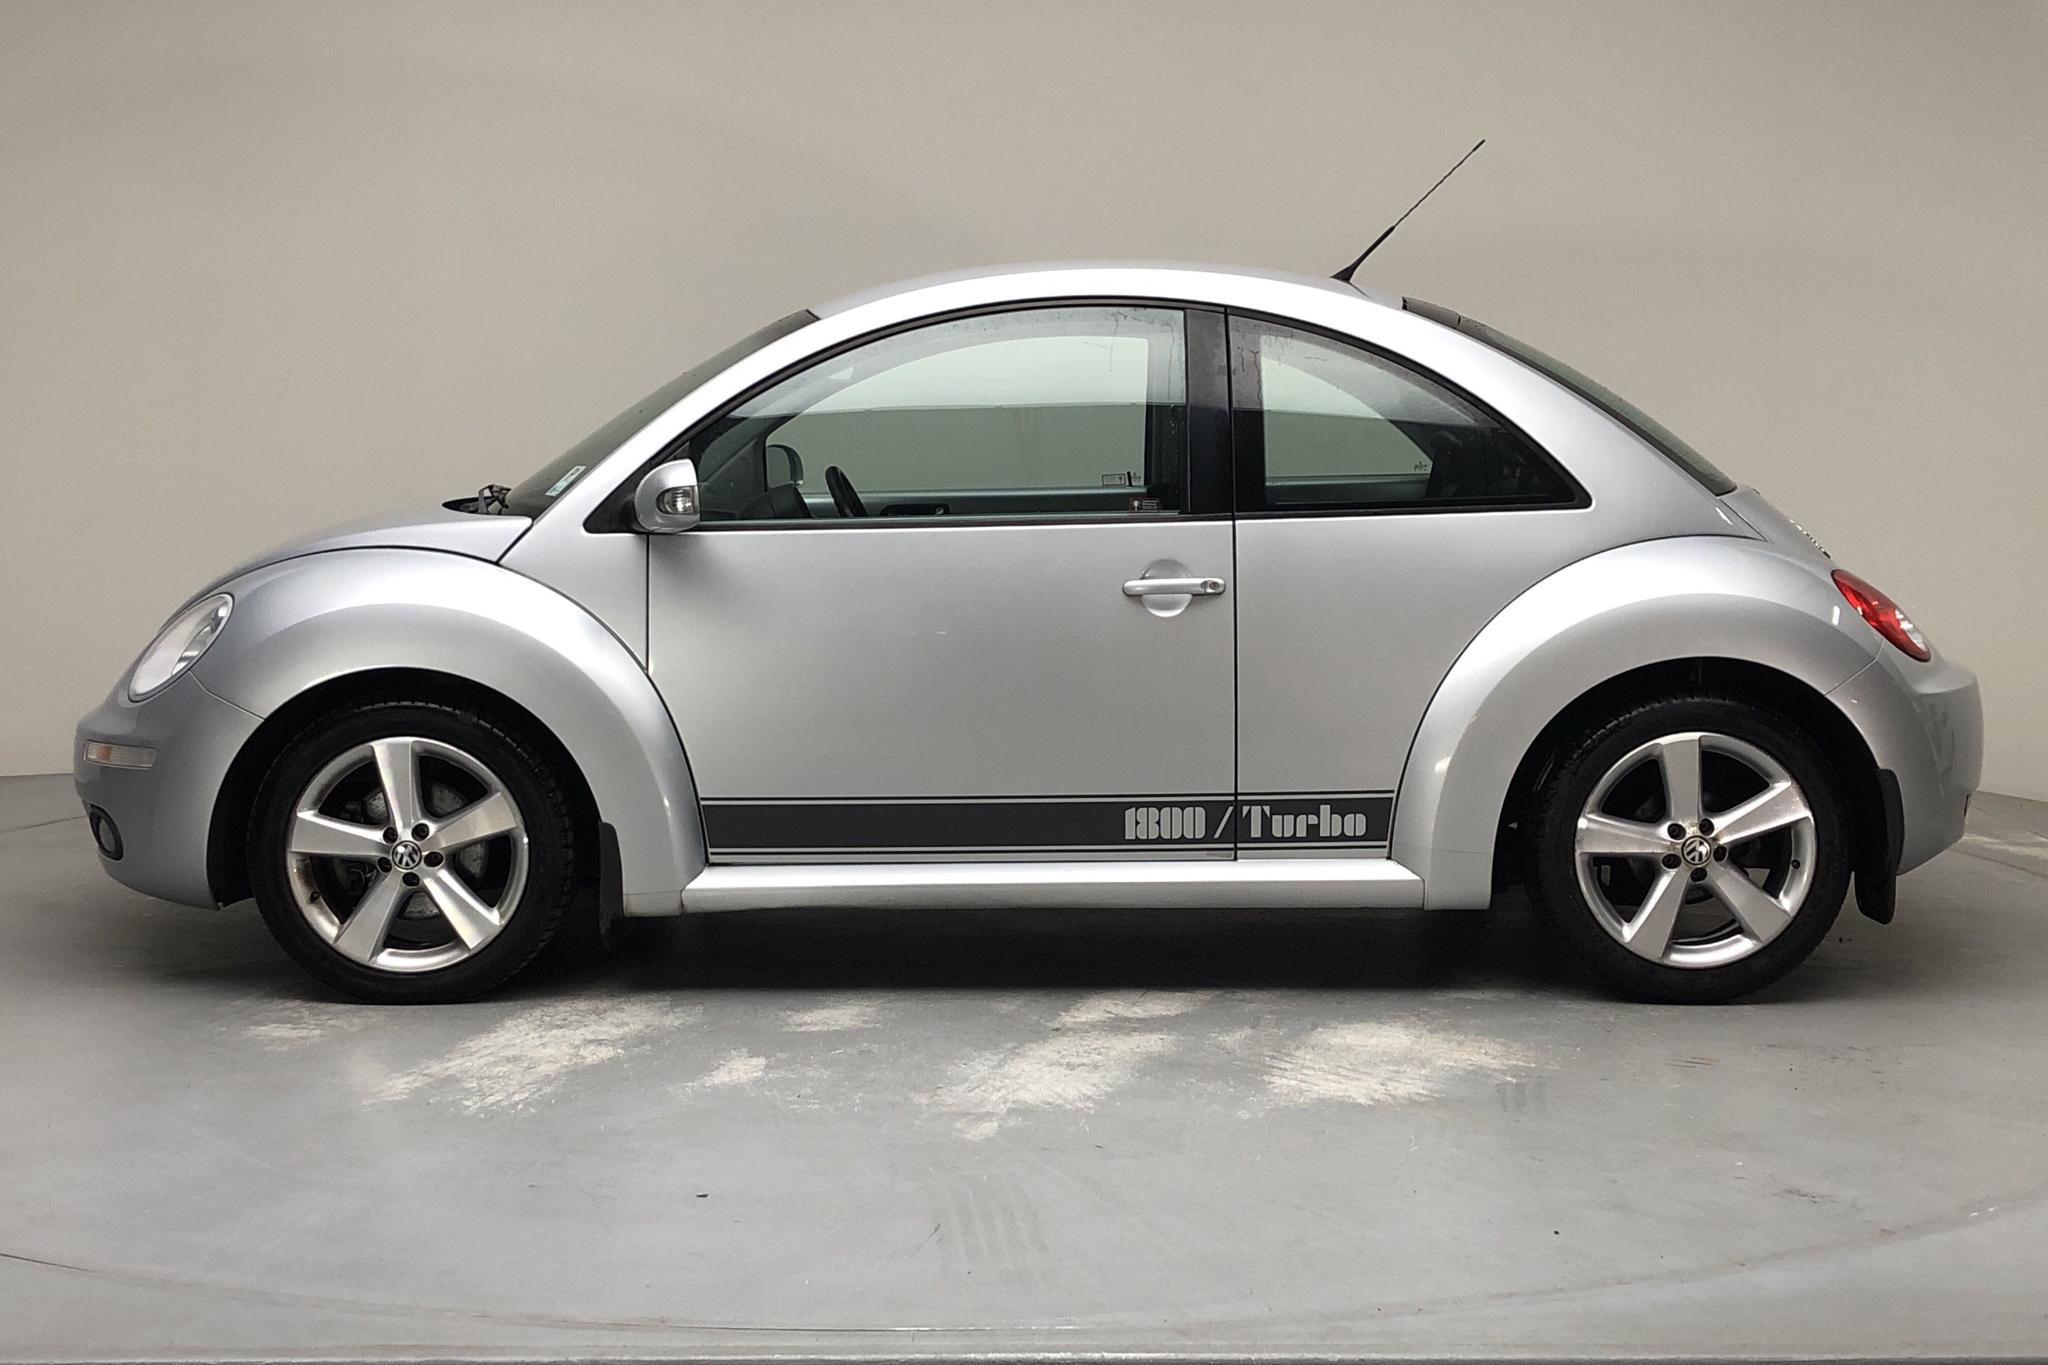 VW Beetle 1.8T (150hk) - 7 306 mil - Manuell - silver - 2008